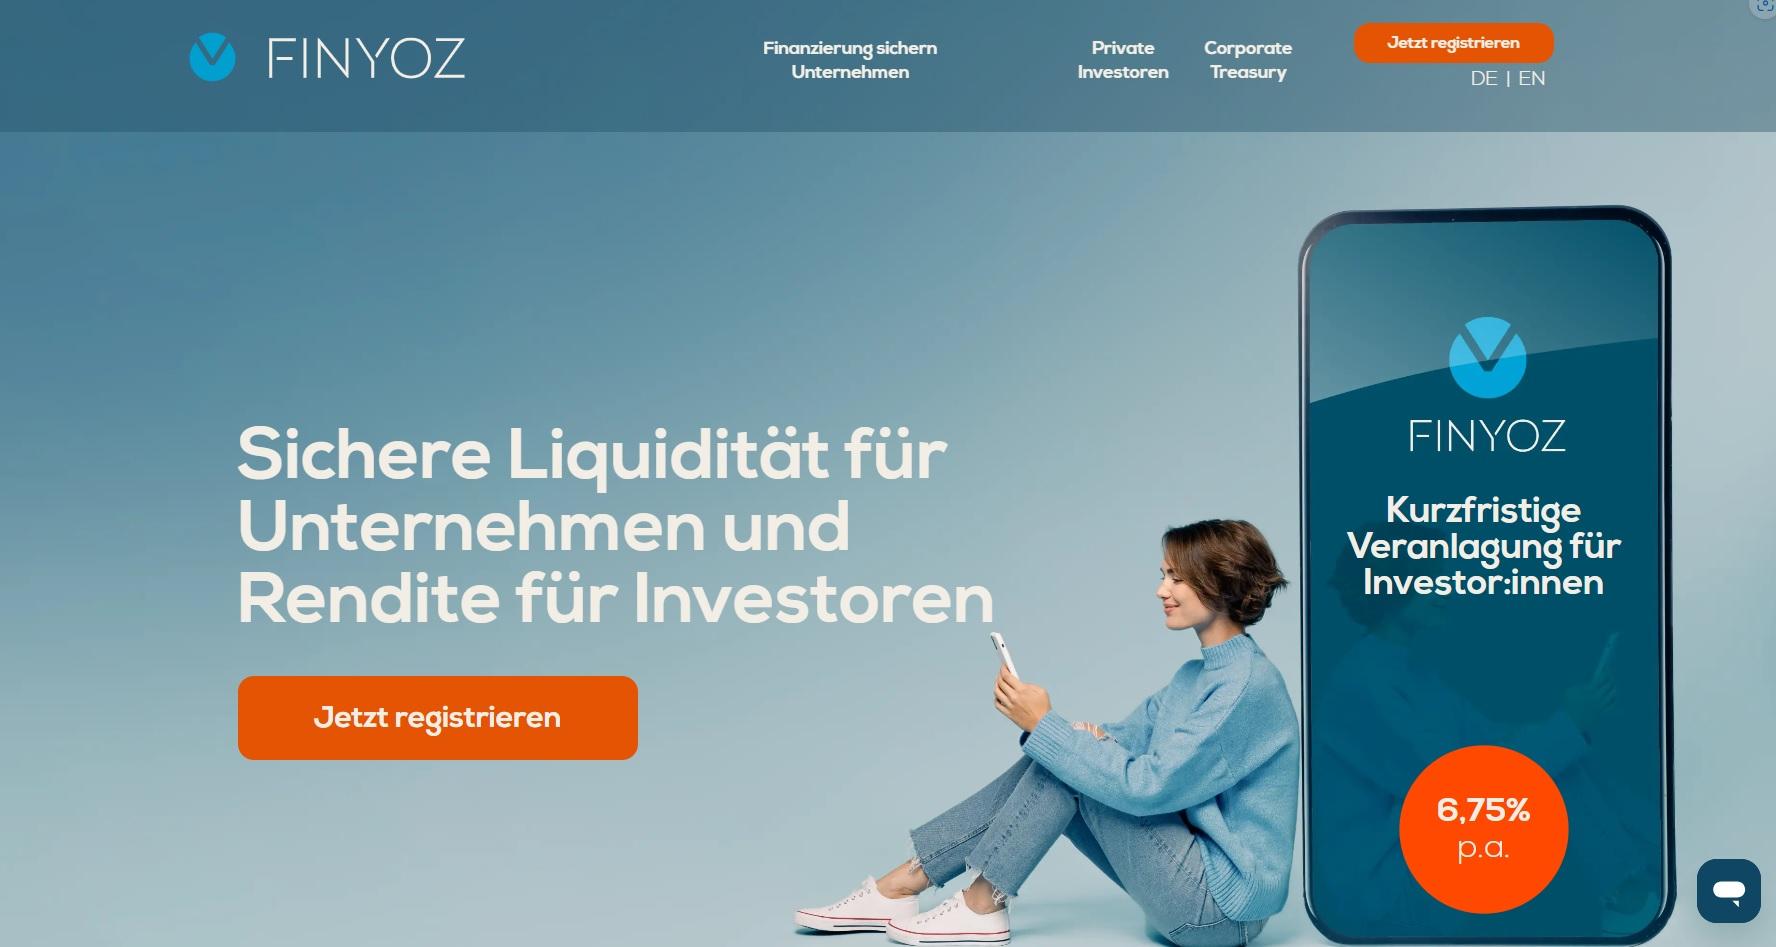 Finyoz Deutschland / startup von München / Background